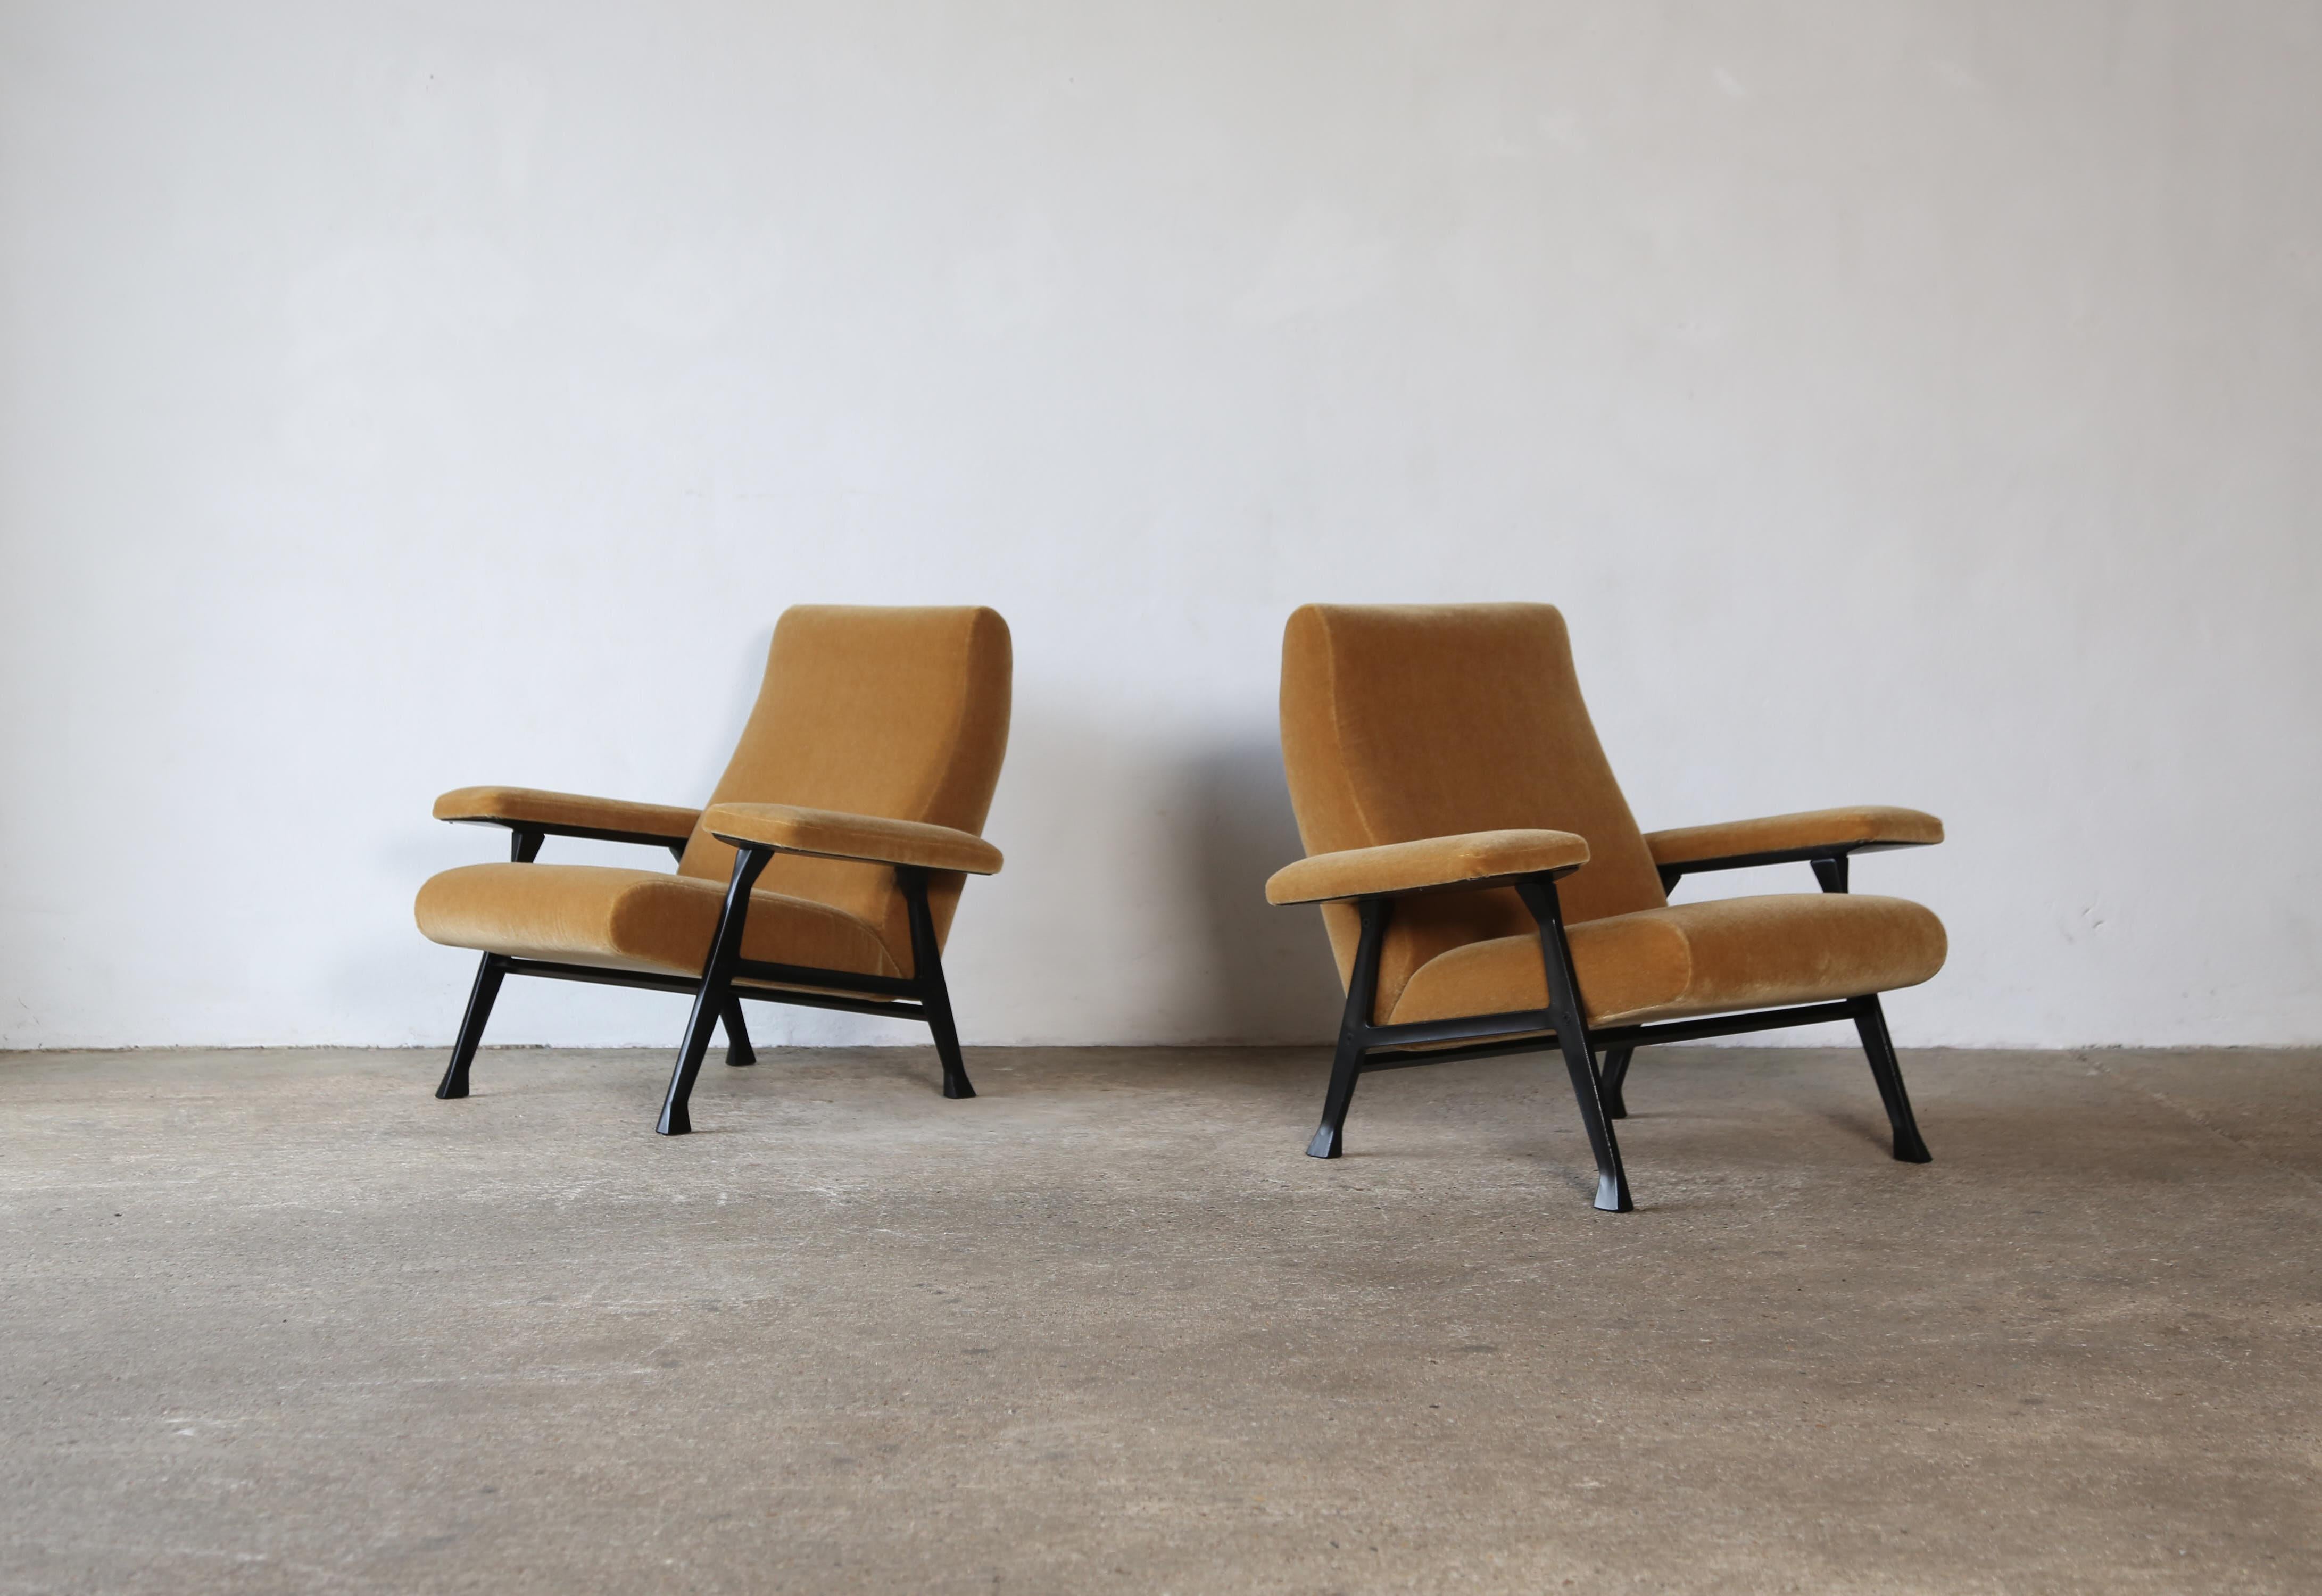 Ein originales Paar Roberto Menghi Hall Stühle, hergestellt von Arflex, Italien, 1950er Jahre. Neu bezogen mit einem hochwertigen gelbgoldenen Stoff aus reinem Mohair.  Die Metallrahmen sind restauriert und neu lackiert worden. Diese Stühle wurden